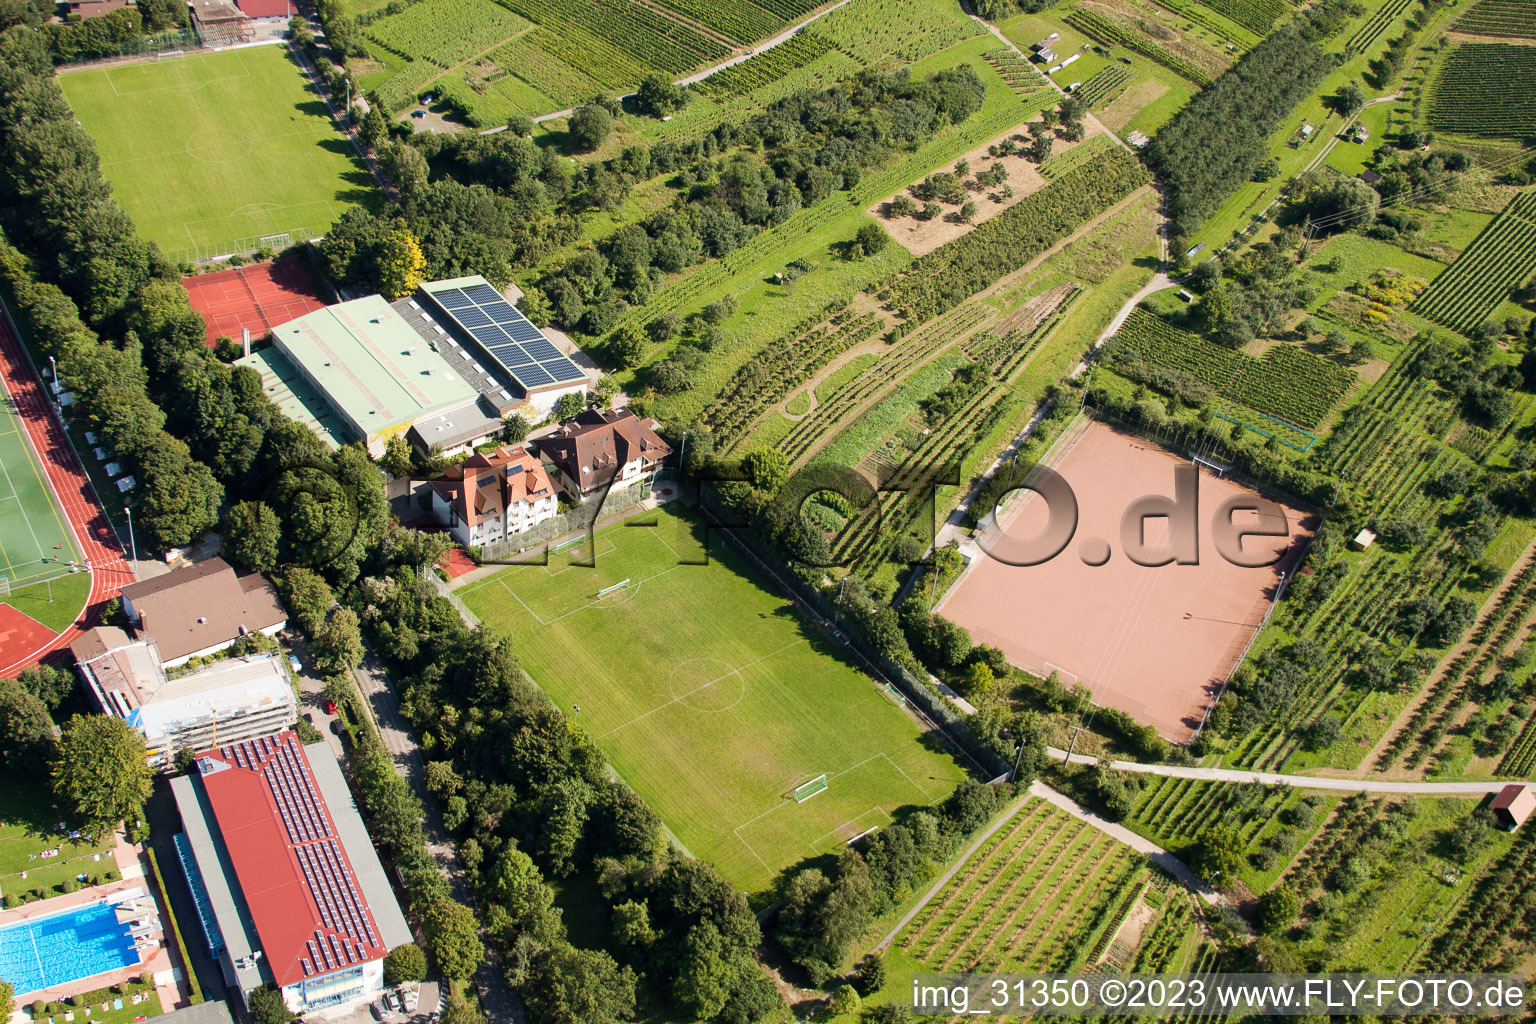 École de sport du sud de Baden, FC Neuweier à le quartier Steinbach in Baden-Baden dans le département Bade-Wurtemberg, Allemagne depuis l'avion